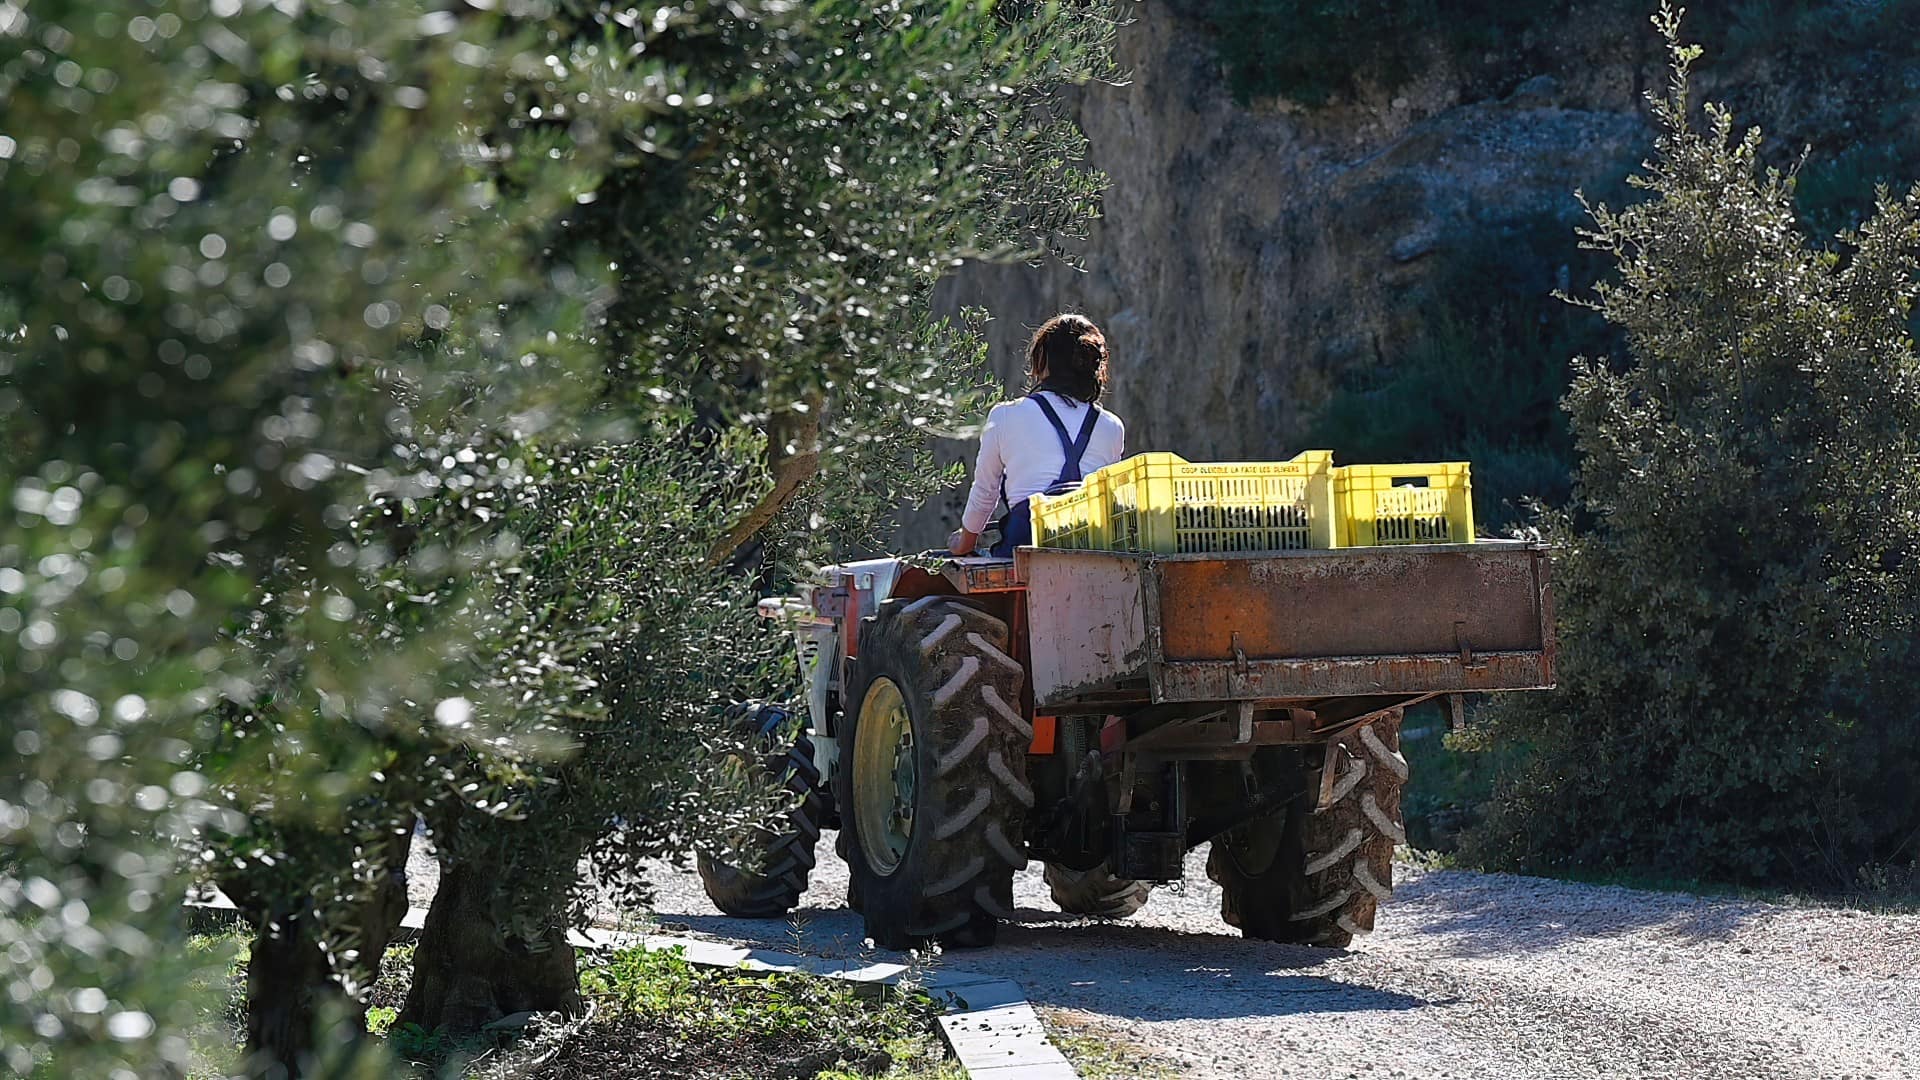 Европа-лучшие-конкурсы-оливкового масла-производство-французские производители-отмечают-превосходное-показ-на-nyiooc-оливковое масло-раз